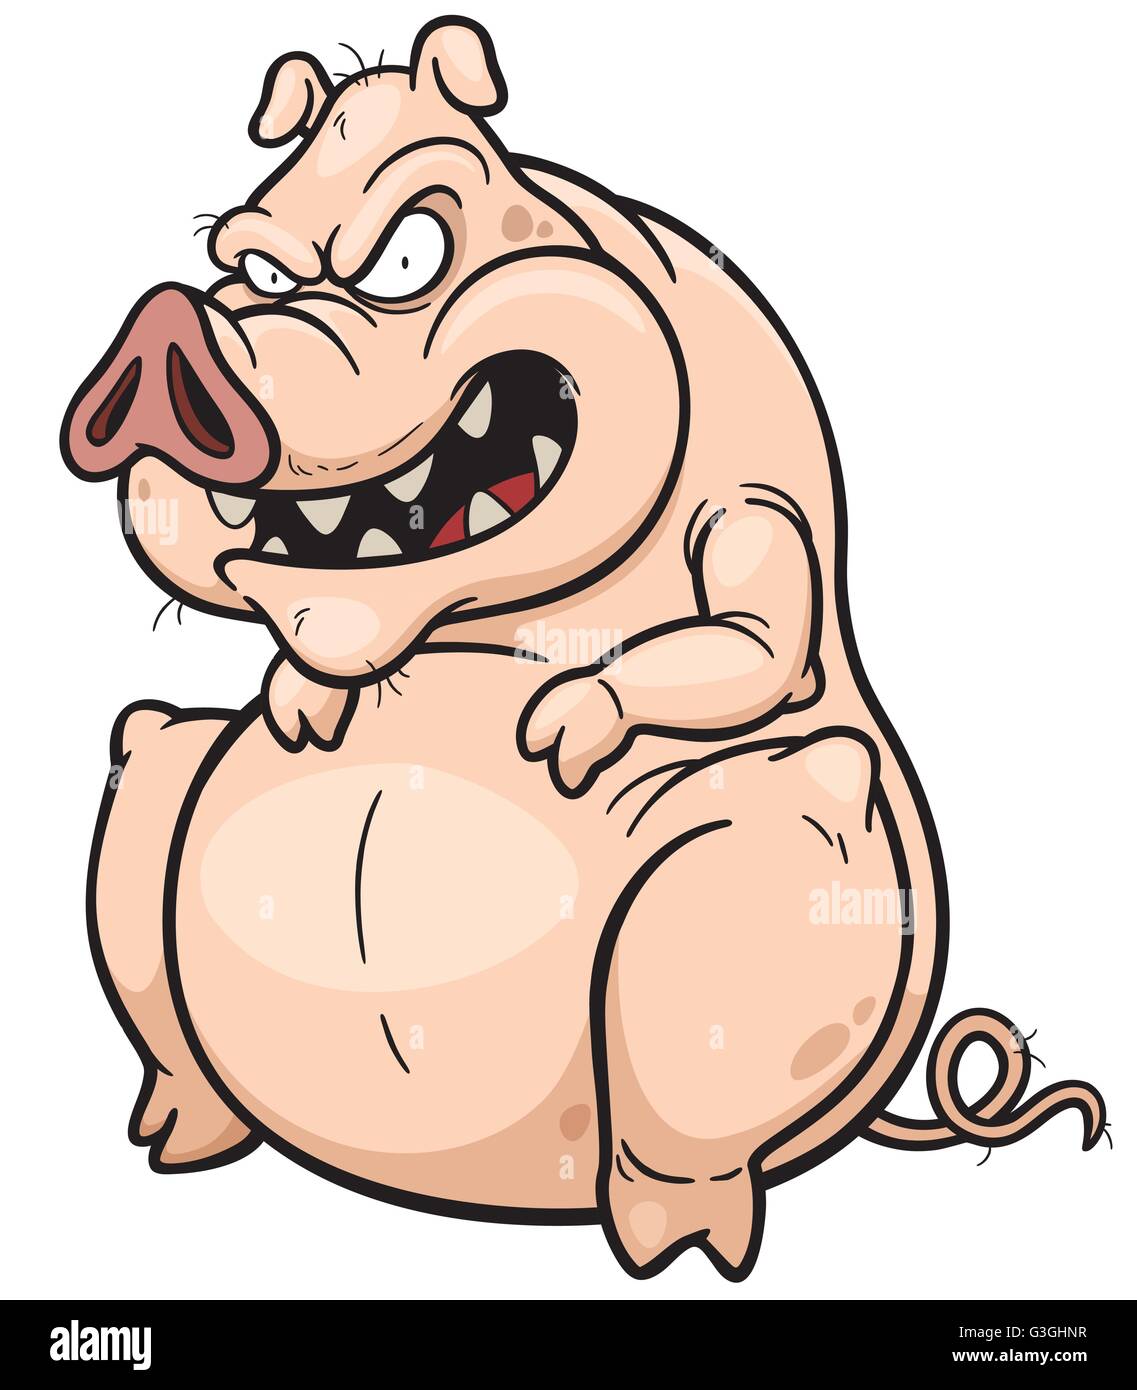 Illustrazione Vettoriale di maiale cartoon Illustrazione Vettoriale